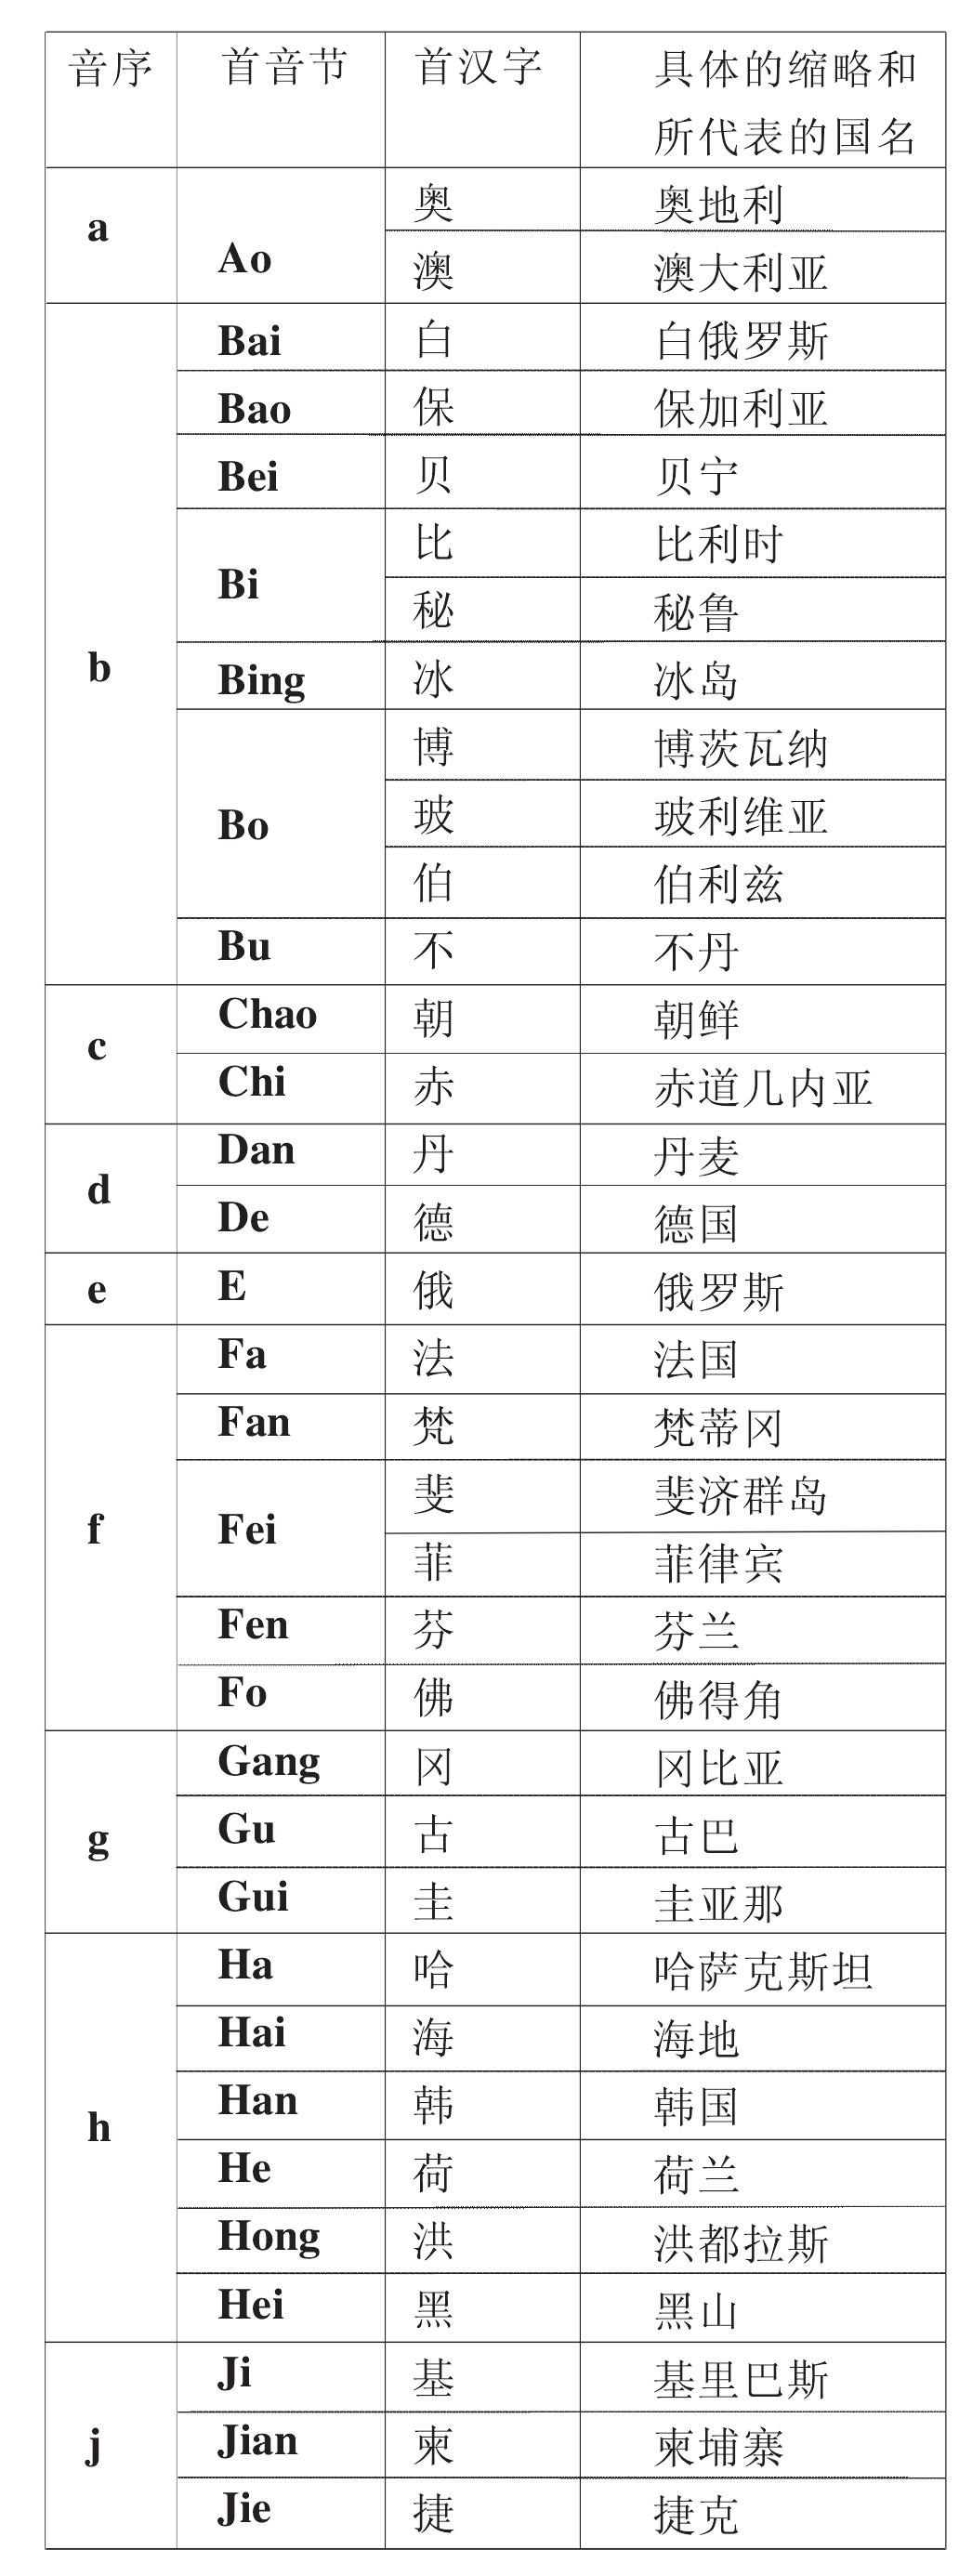 关于中译世界各国国名的缩略方式和它们的首字缩略式